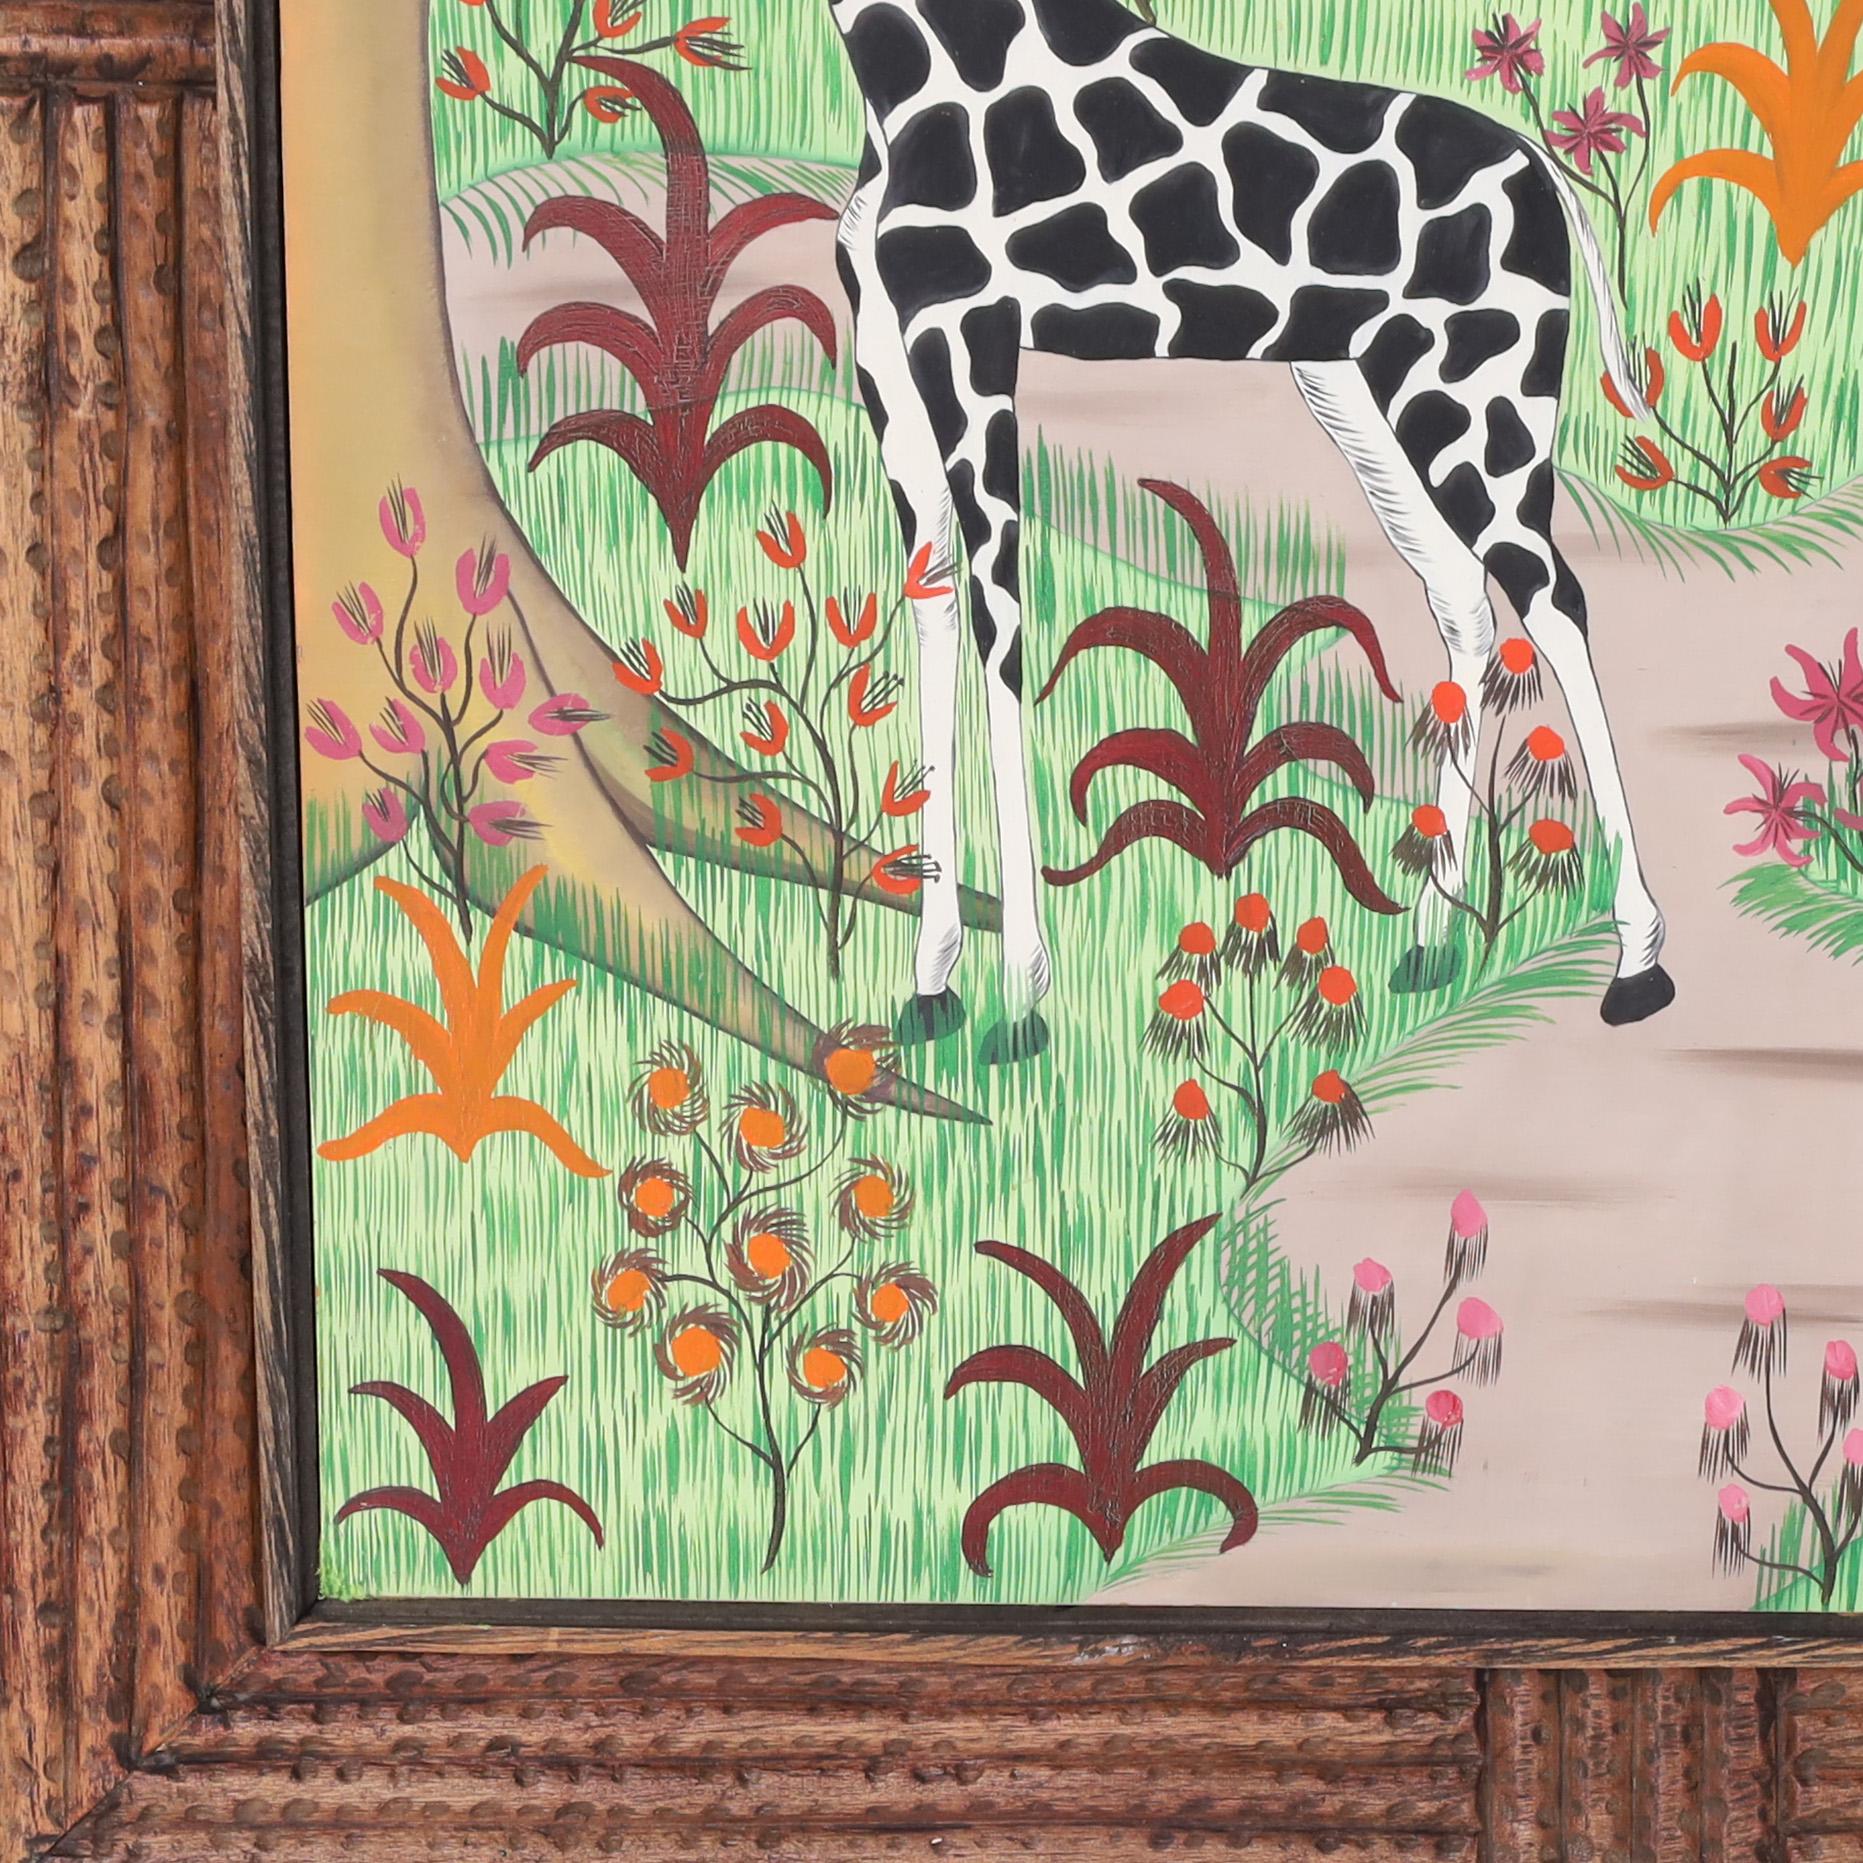 Remarquable peinture acrylique vintage sur panneau représentant deux girafes dans un paysage de fleurs et d'arbres, exécutée selon une technique naïve et ludique caractéristique. Signée Fils Rigaud Benoit 74 et présentée dans son cadre original en